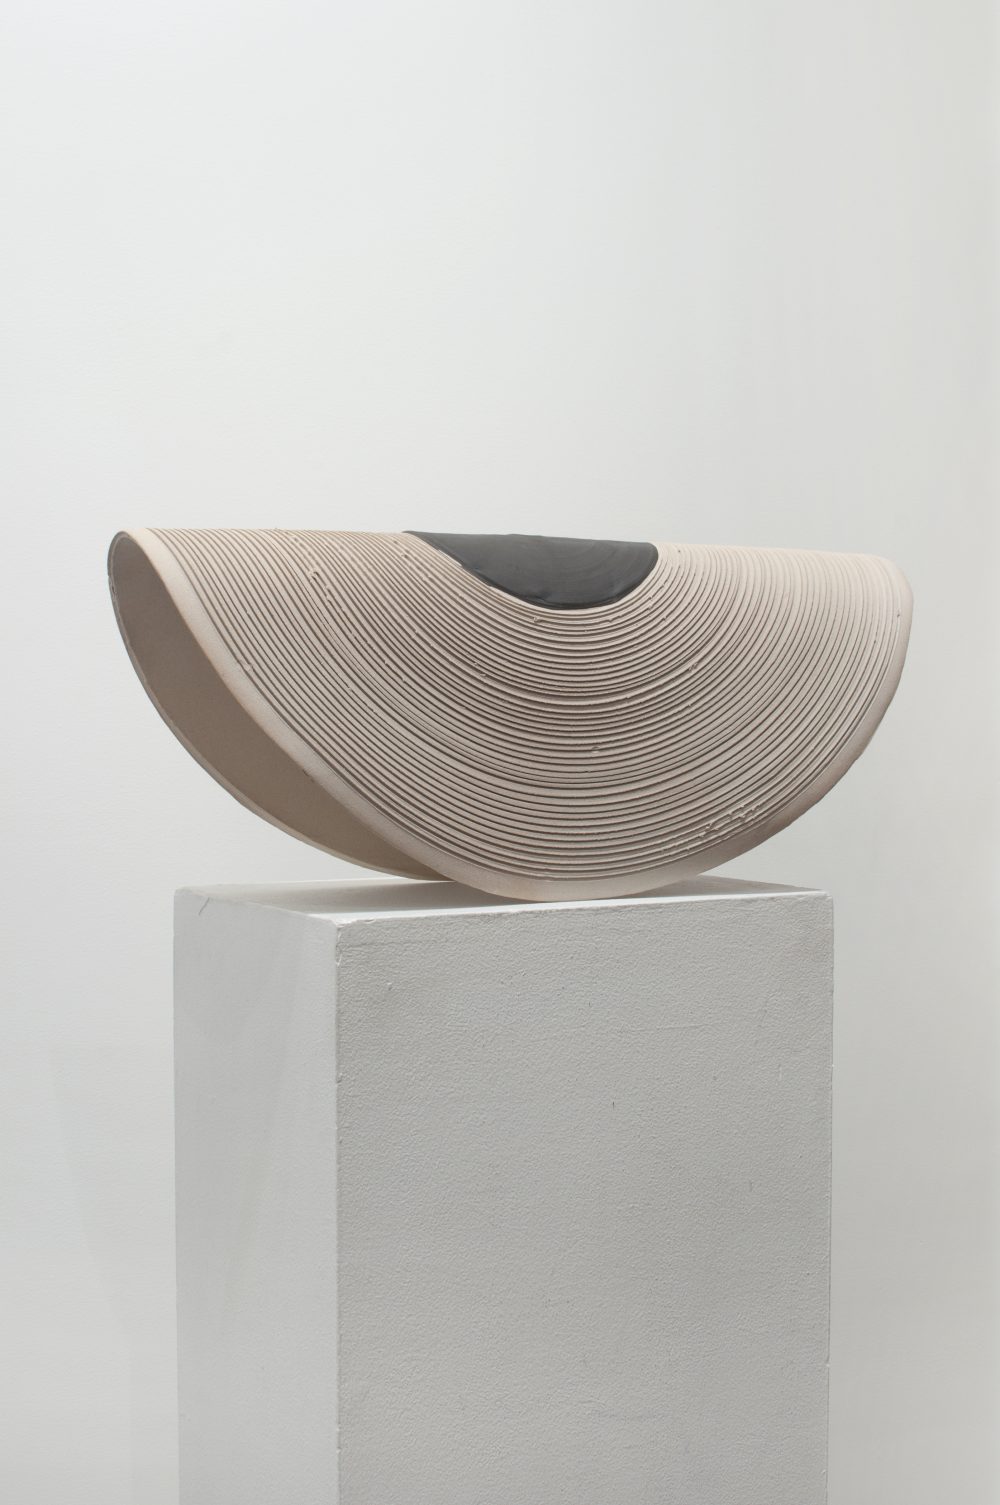 Round sculpture